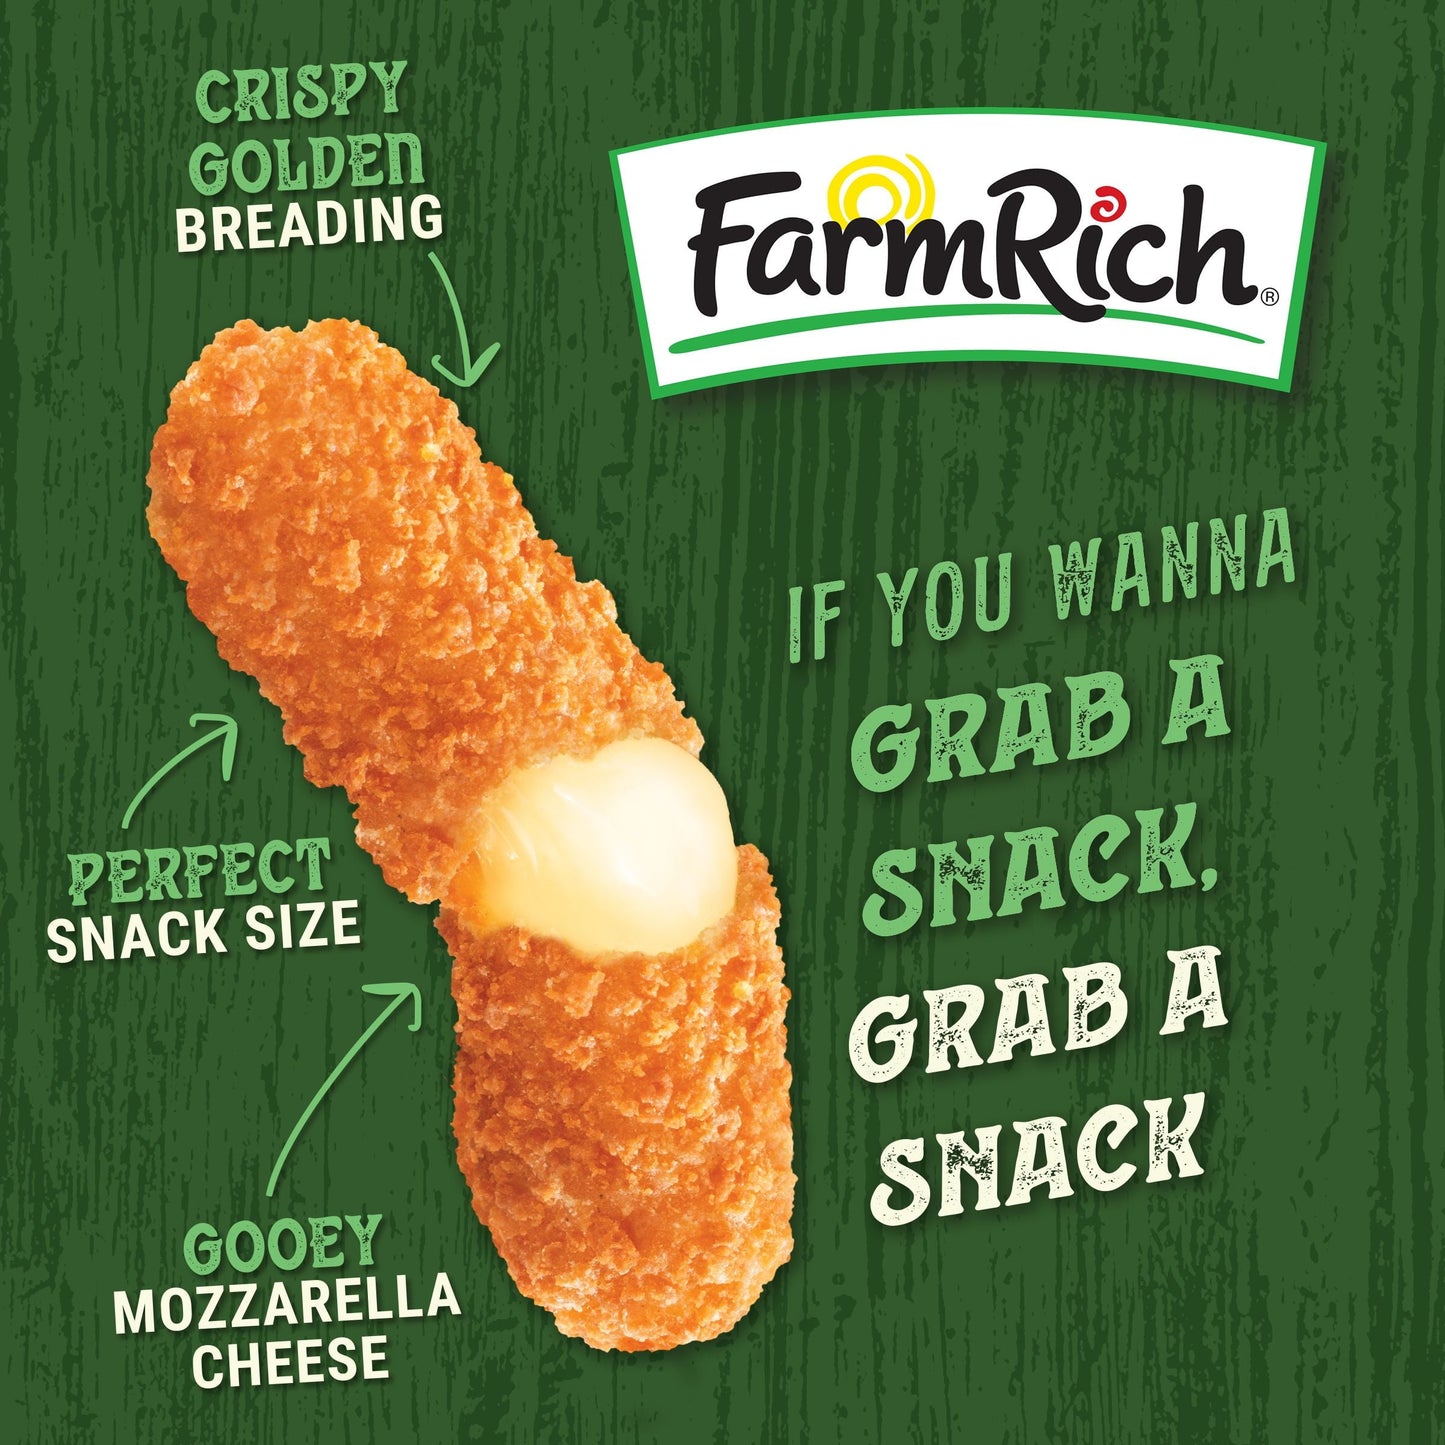 Farm Rich Breaded Mozzarella Cheese Sticks, Regular, 22 oz (Frozen)